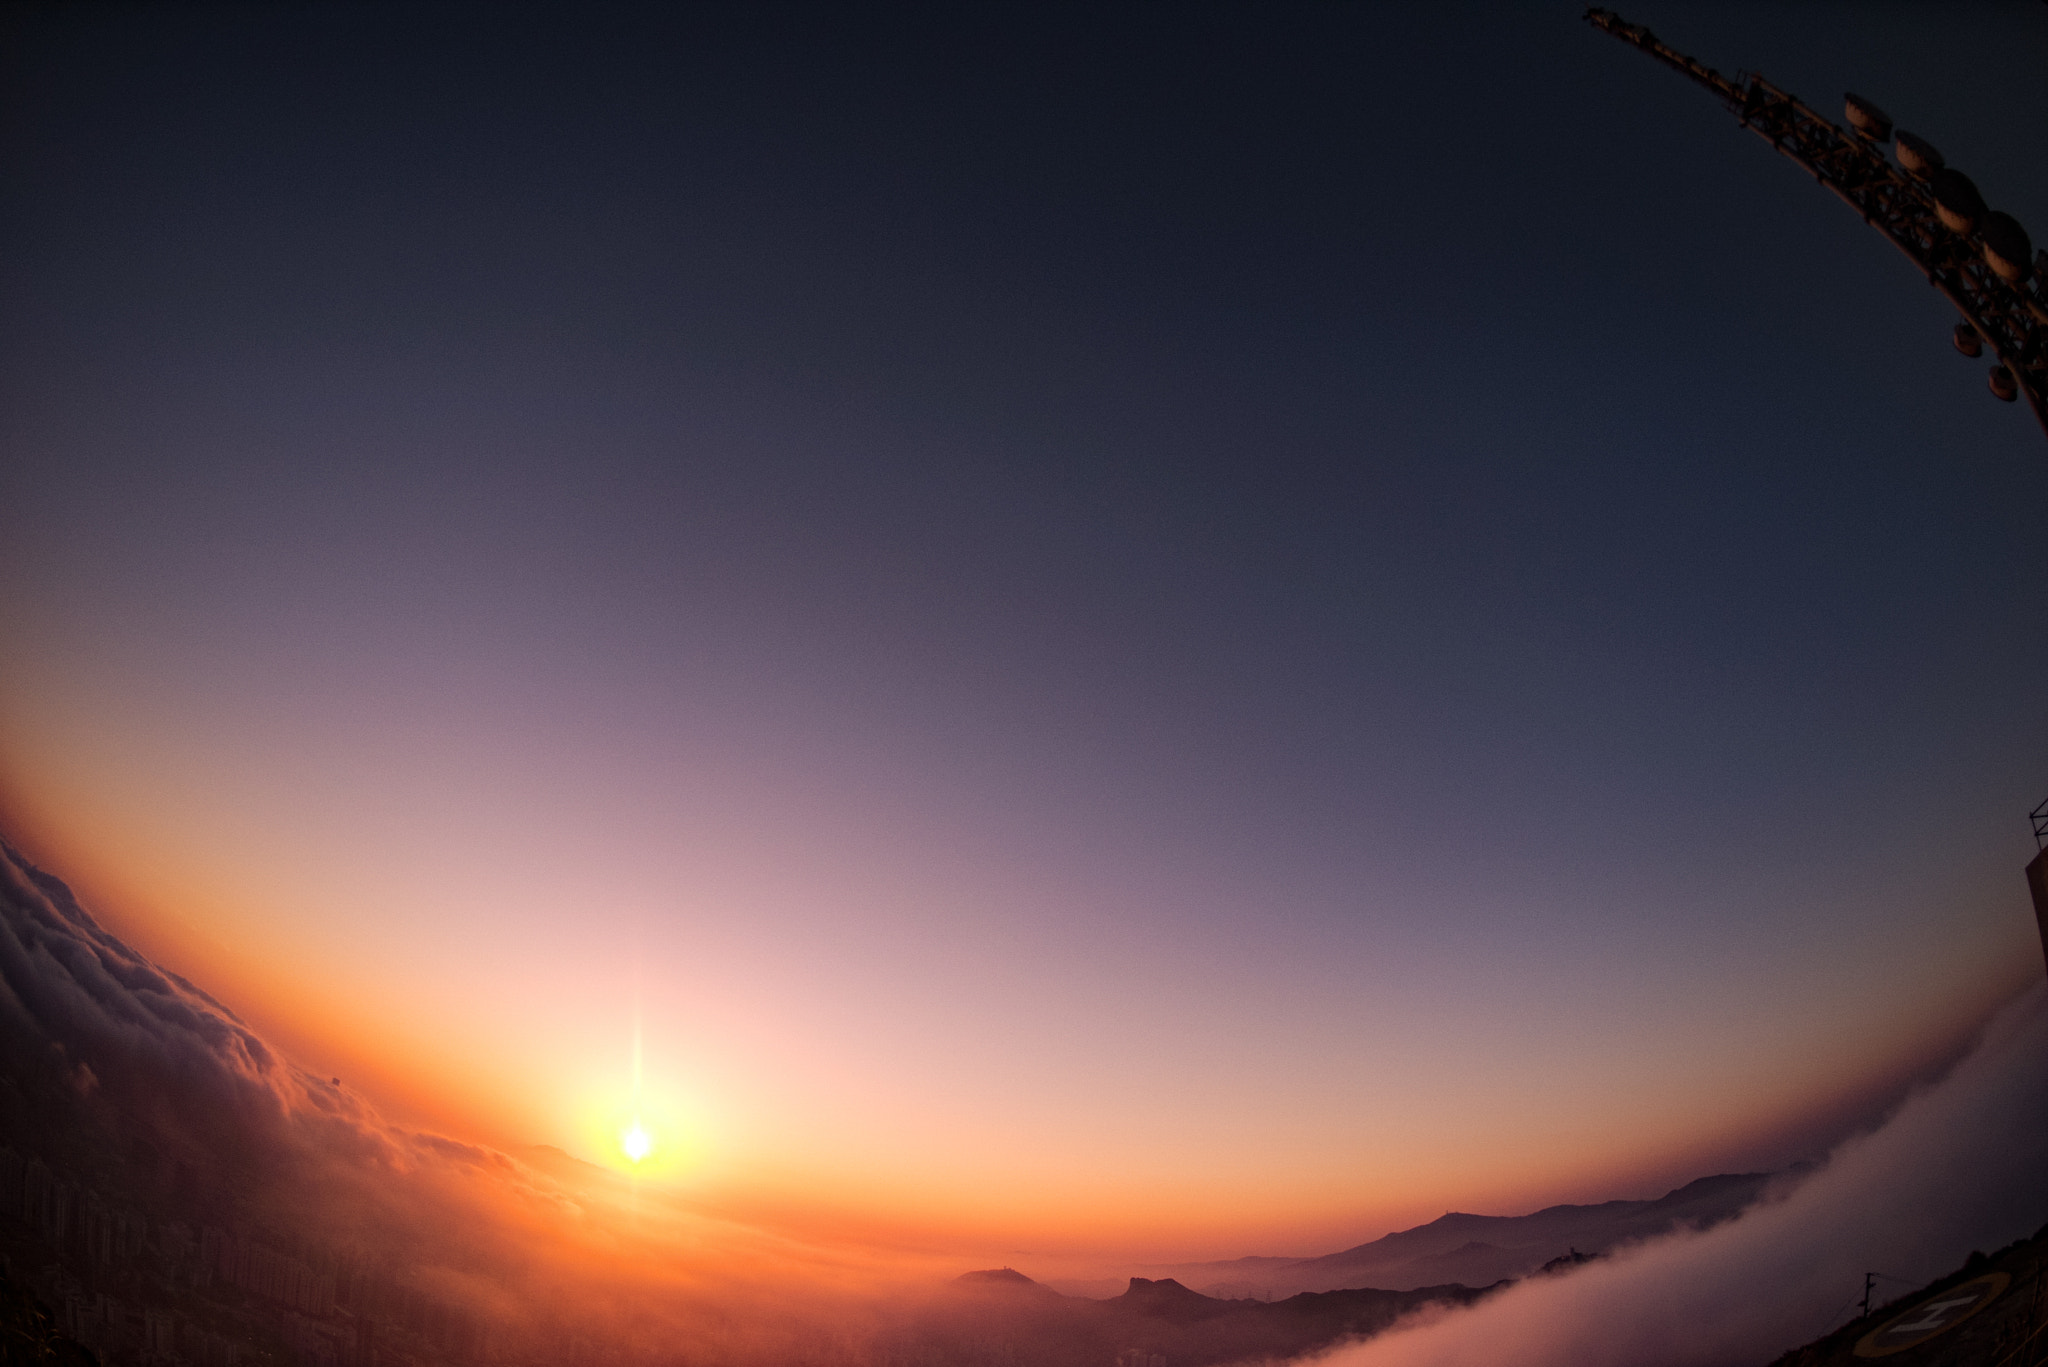 Nikon D810 sample photo. Sunset from kowloon peak photography